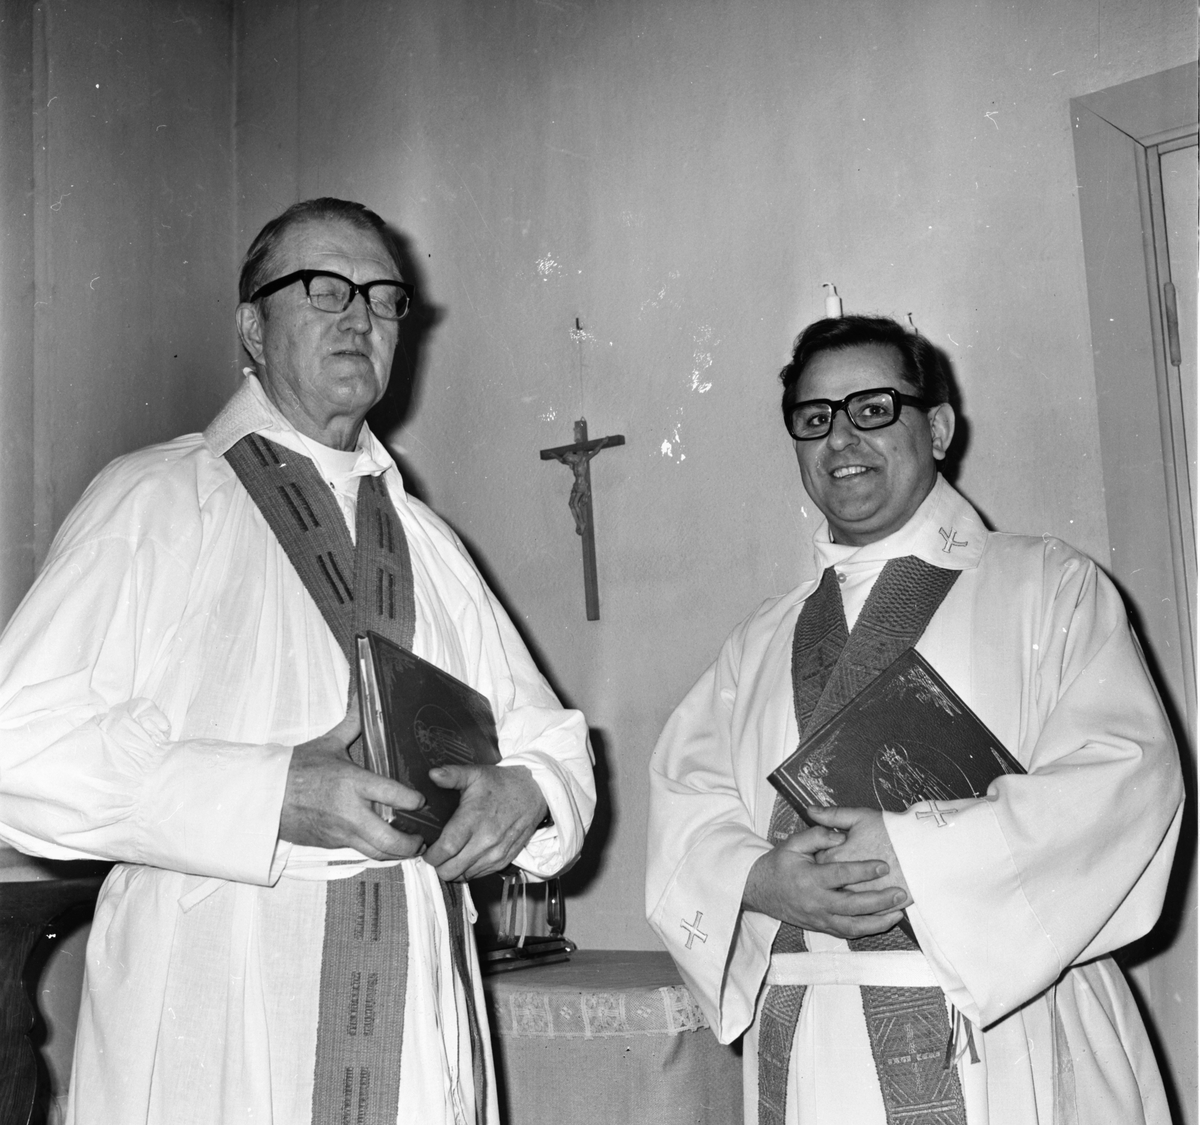 Kyrkoherden hälsas välkommen.
Februari 1973